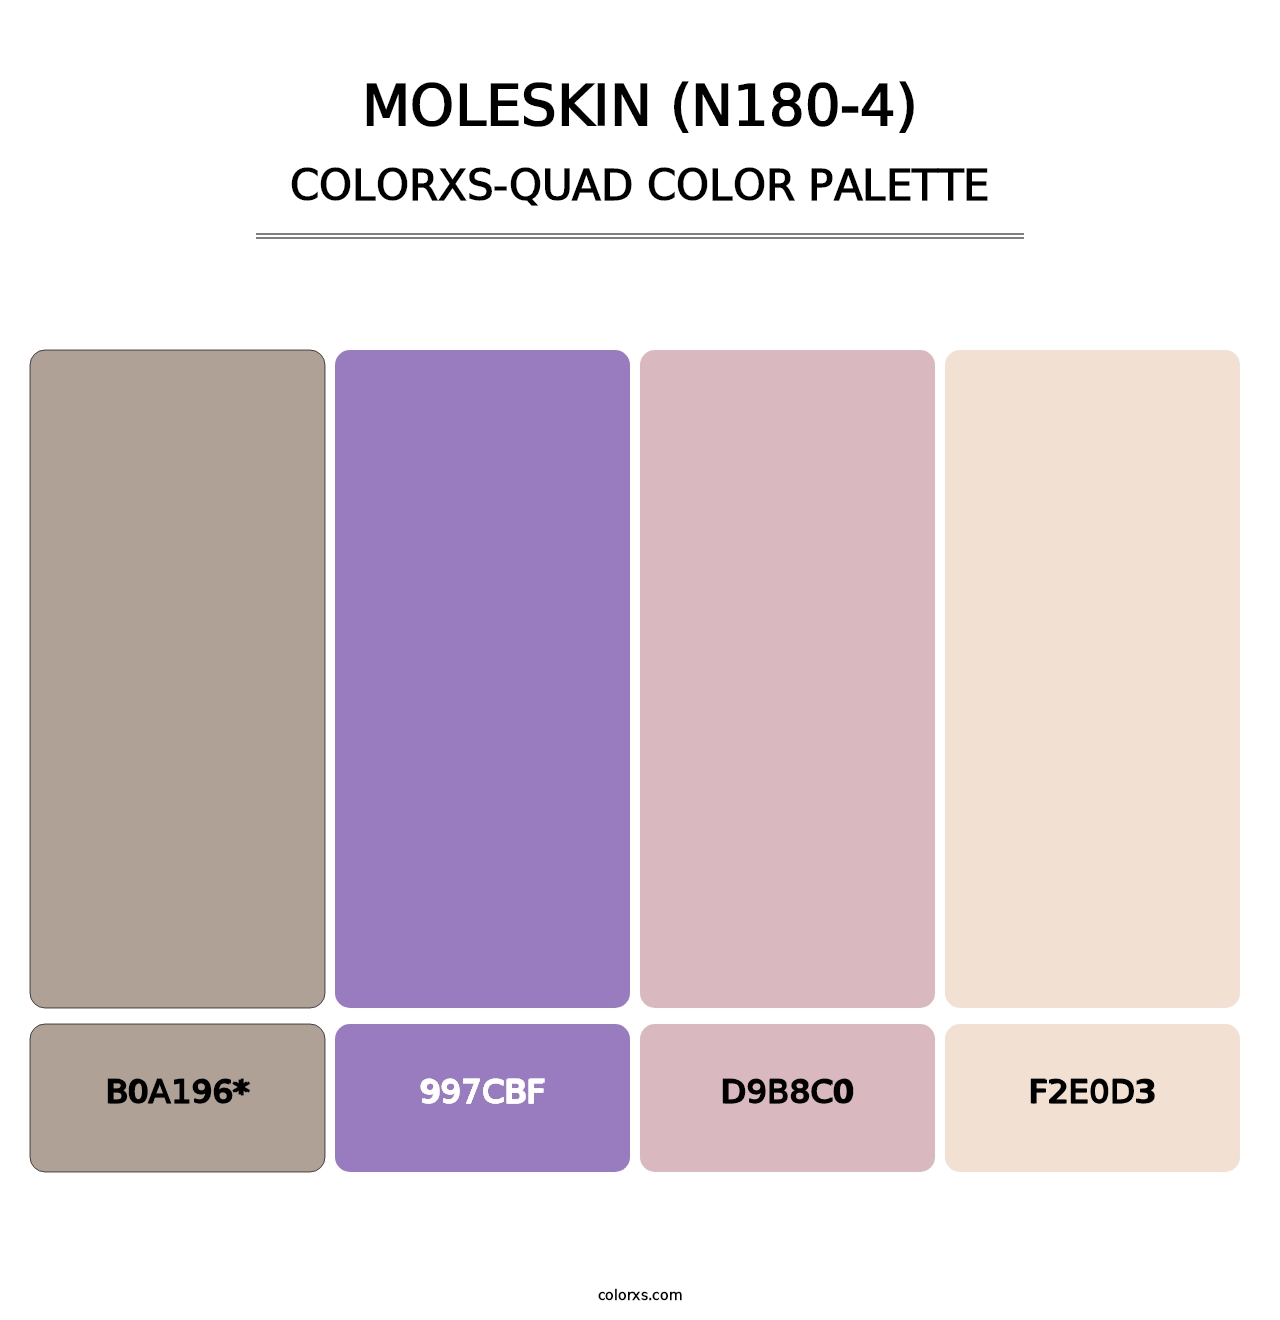 Moleskin (N180-4) - Colorxs Quad Palette